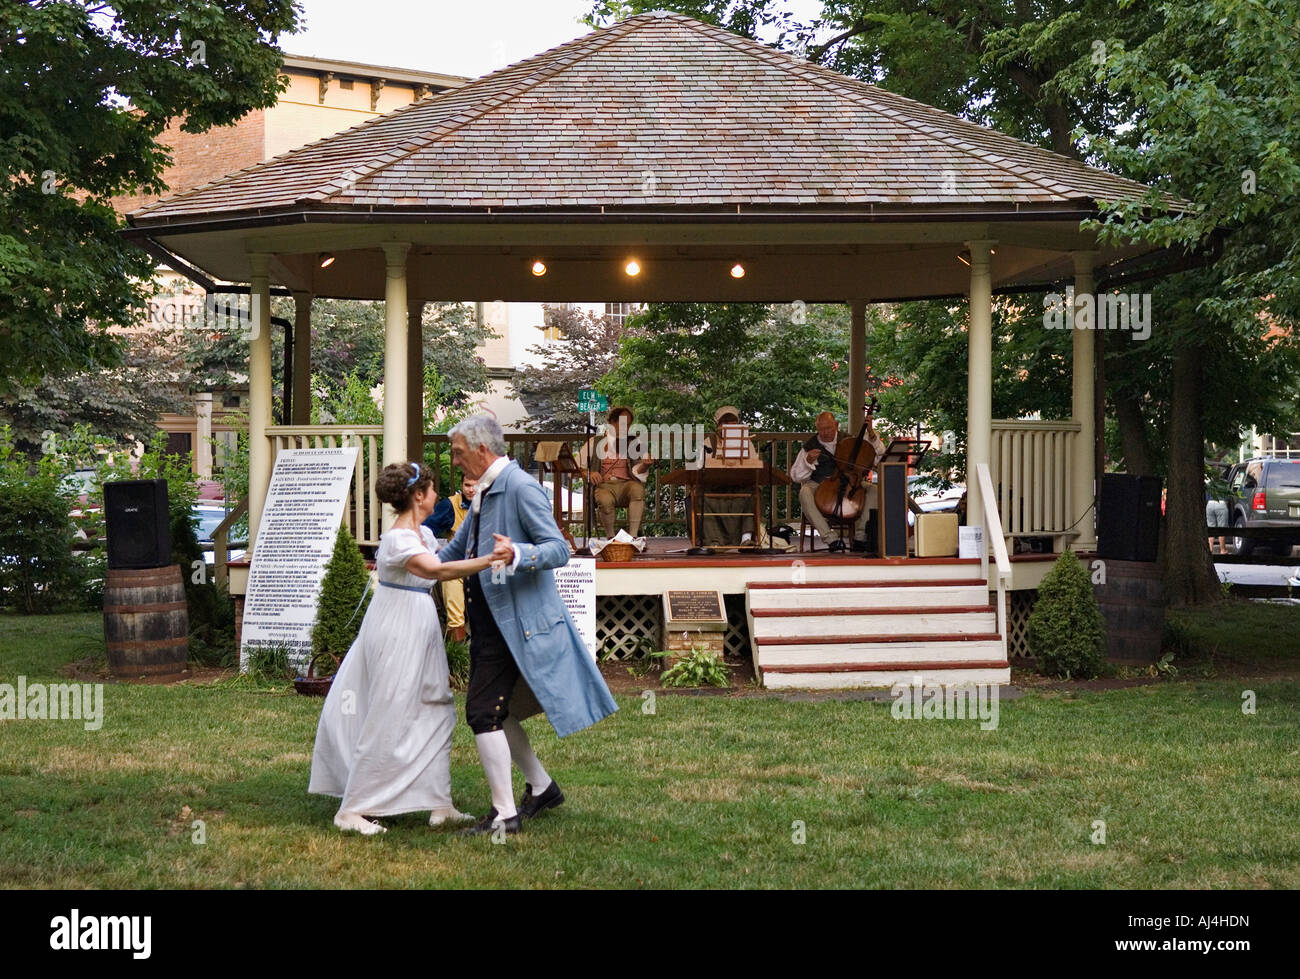 Vieux couple dans la guerre civile américaine Costume époque danser devant de Town Square Band Stand Corydon Indiana Banque D'Images